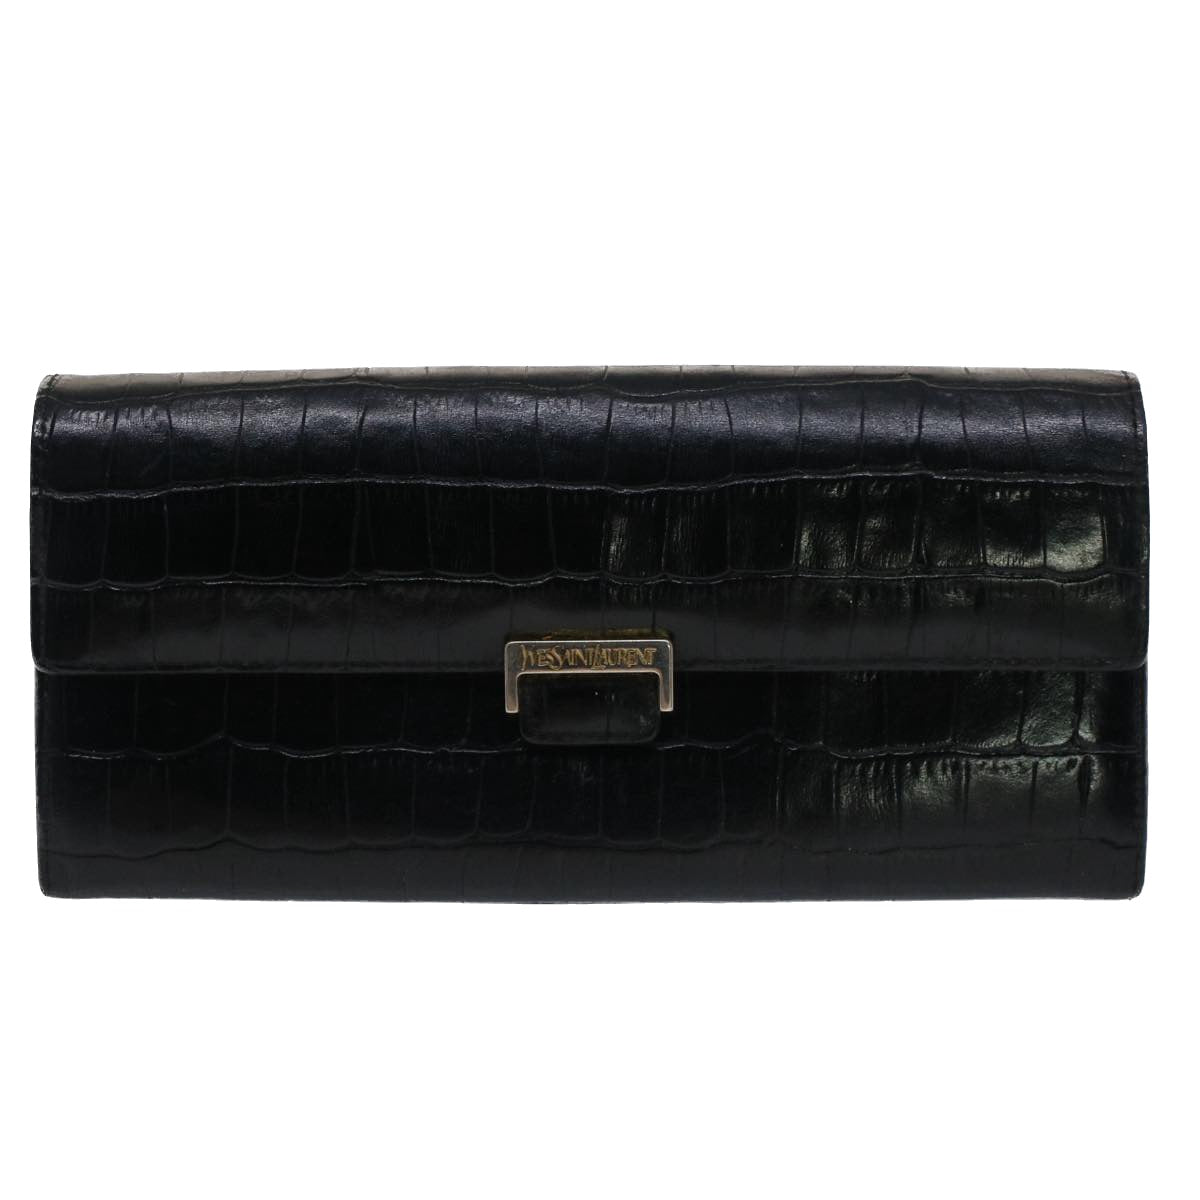 SAINT LAURENT Wallet Leather 3Set Black Auth bs7465 - 0